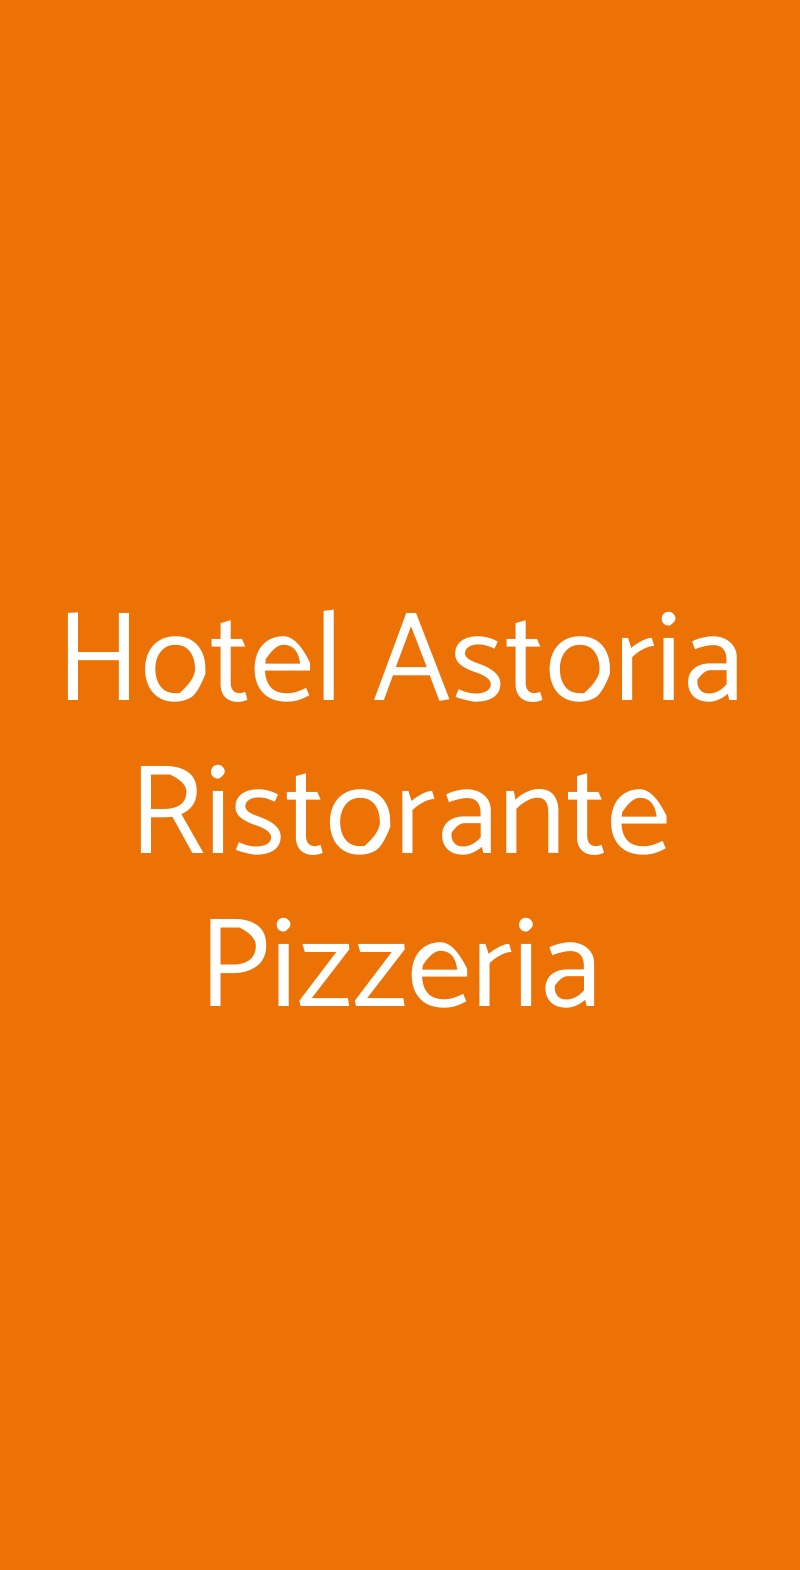 Hotel Astoria Ristorante Pizzeria Fidenza menù 1 pagina